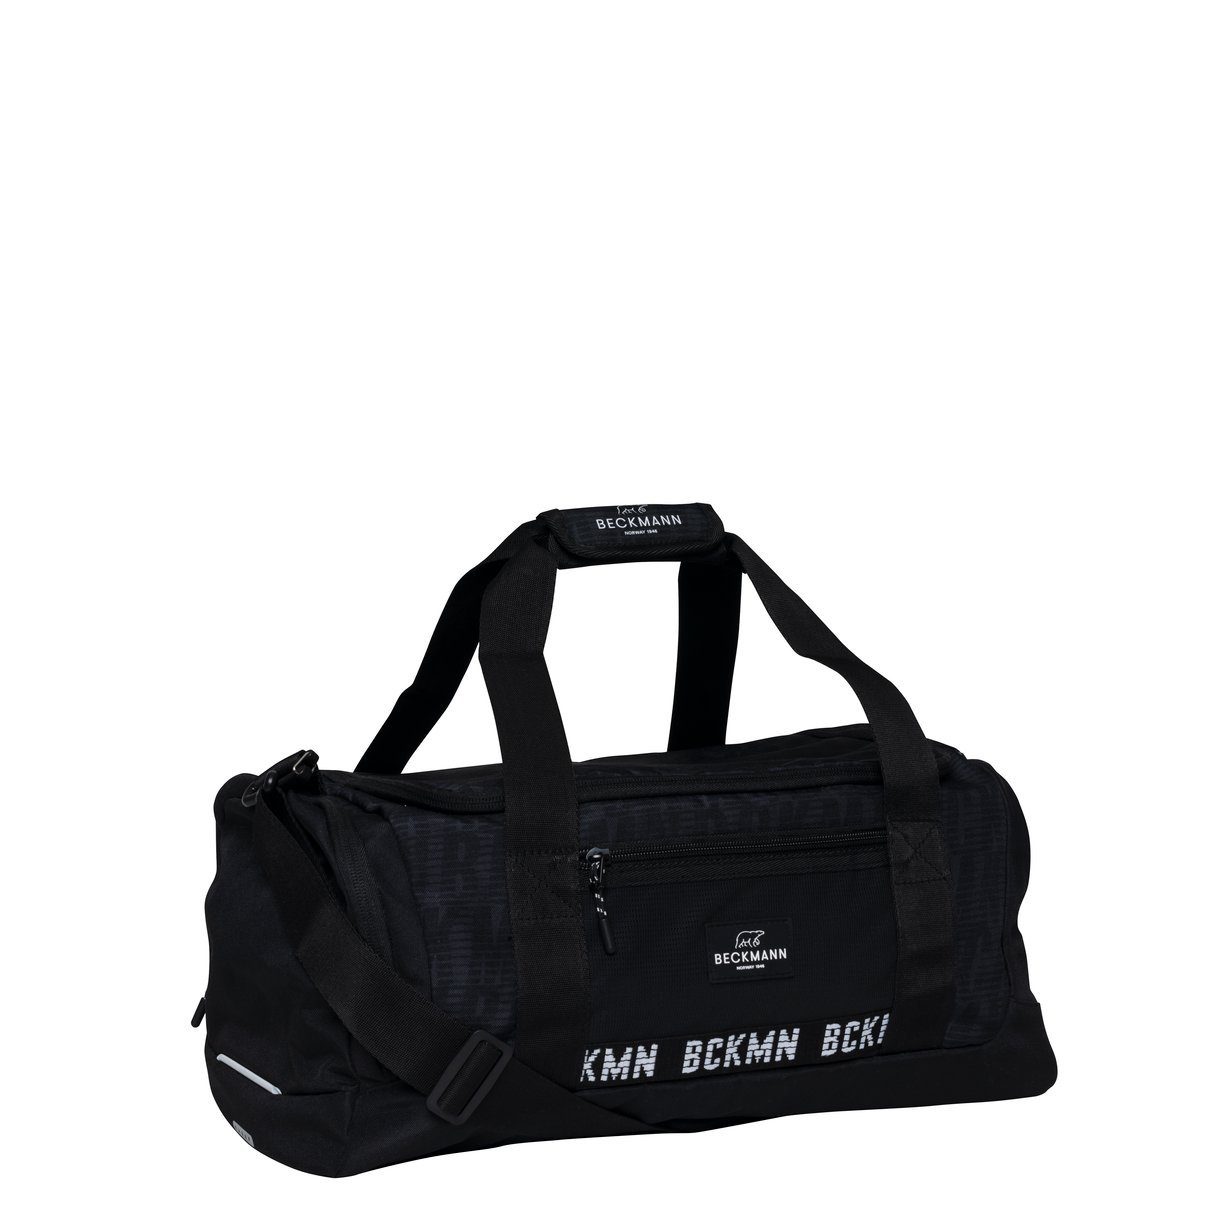 schwarz Fitnesstasche Reisetasche Duffelbag Fjordlaender Sporttasche mit Schuhfach und abnehmbarem Schulterriemen